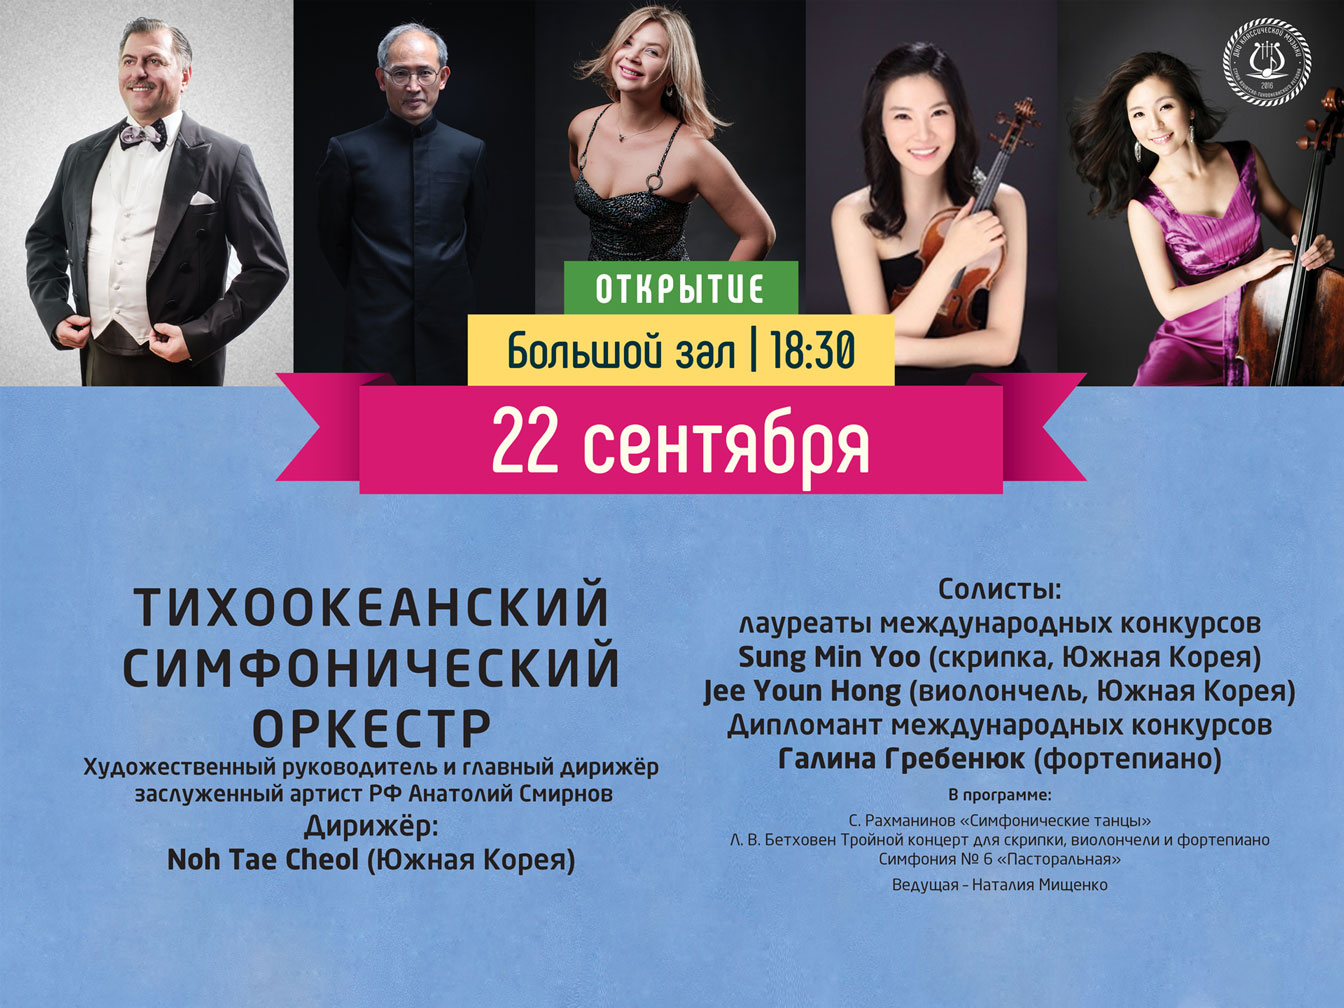 22 сентября Большой зал 18:30 ОТКРЬIТИЕ Фестиваль «Дни классической музыки стран АТР»